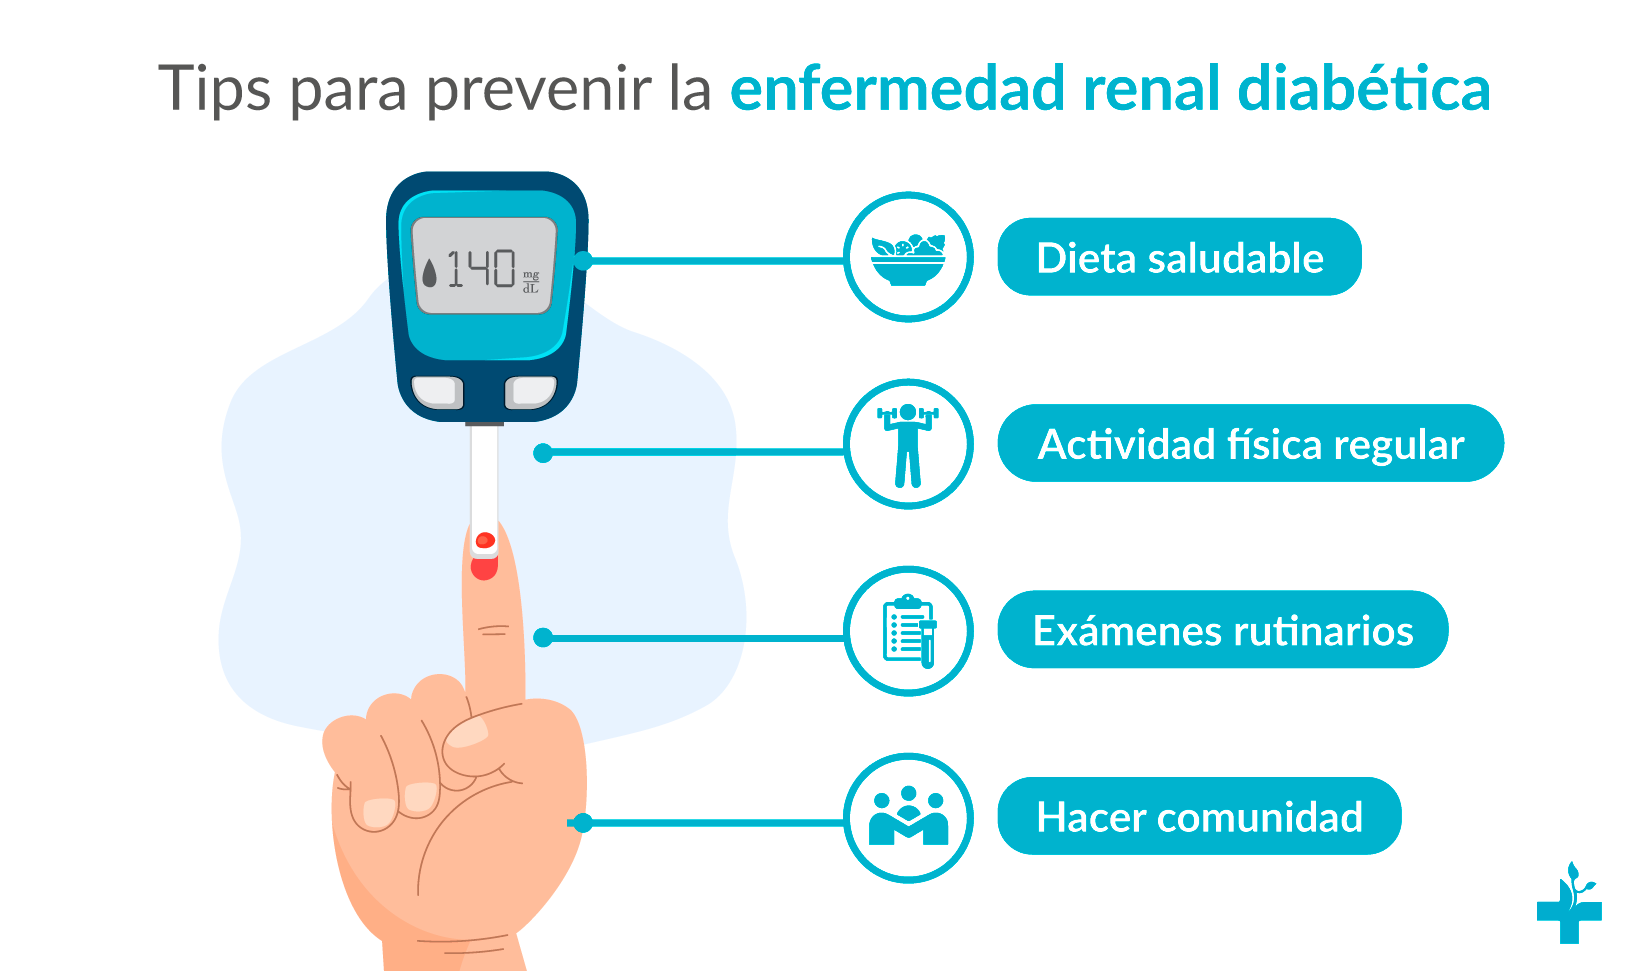 Tratamiento y prevención de la enfermedad renal diabética